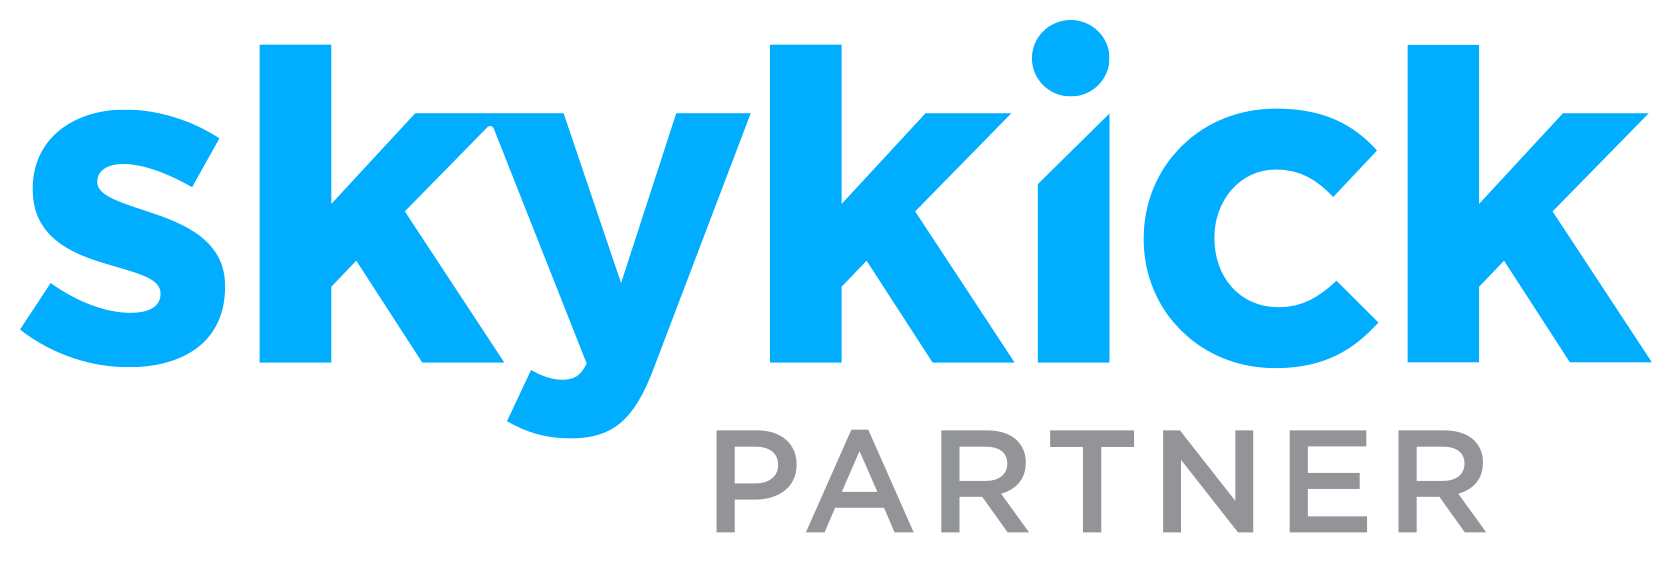 SkyKick